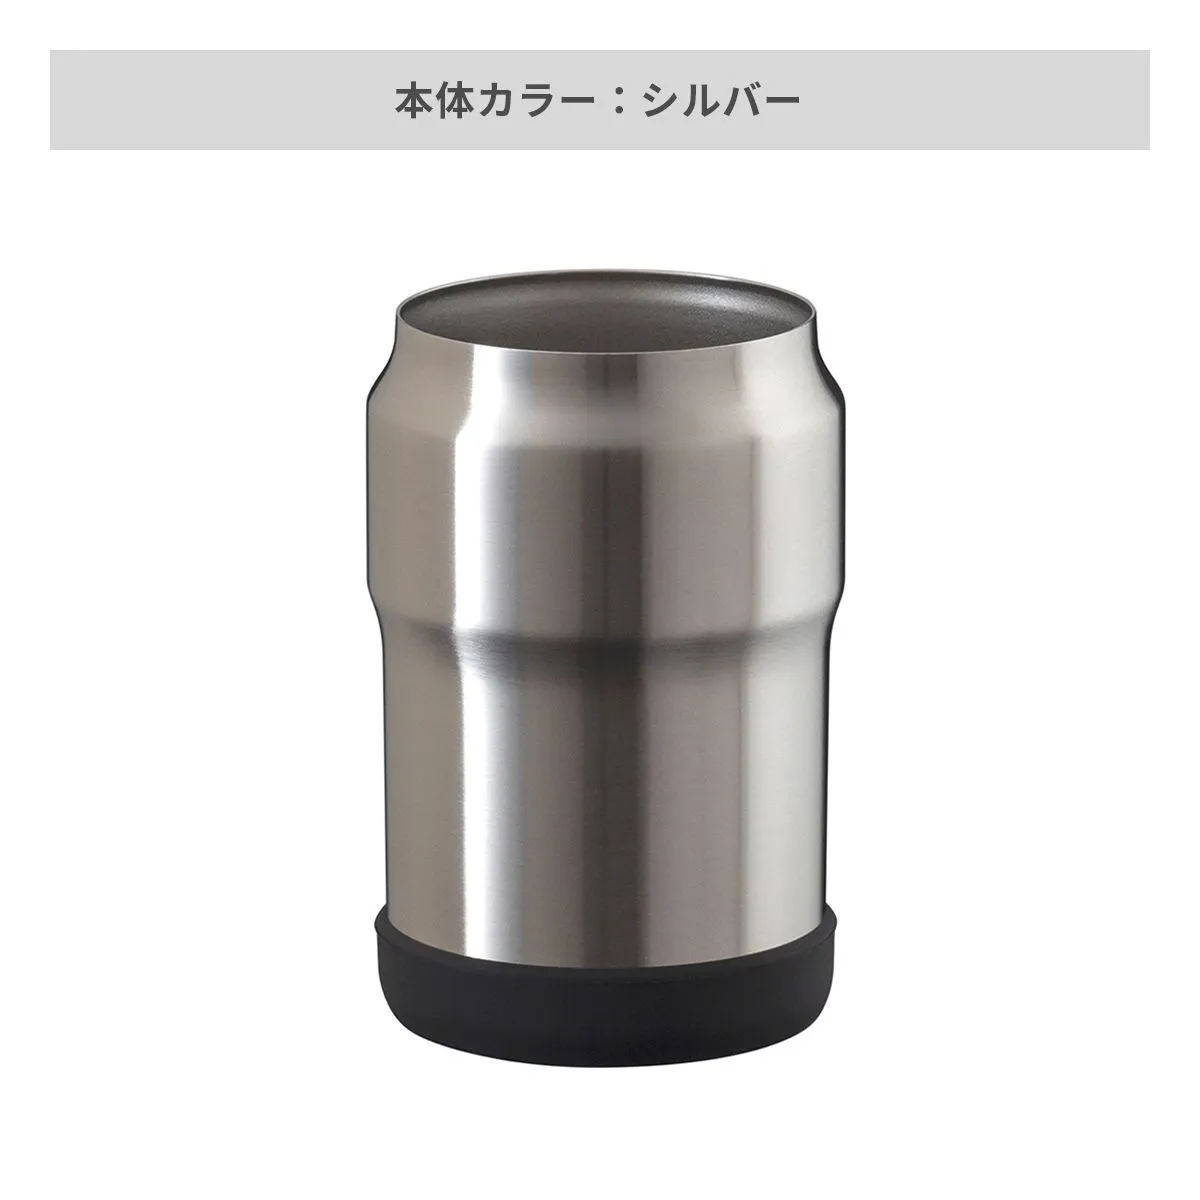 ウェンズ 保冷缶ホルダー 350ml缶用【オリジナルペットボトルホルダー / 回転シルク印刷】 画像4